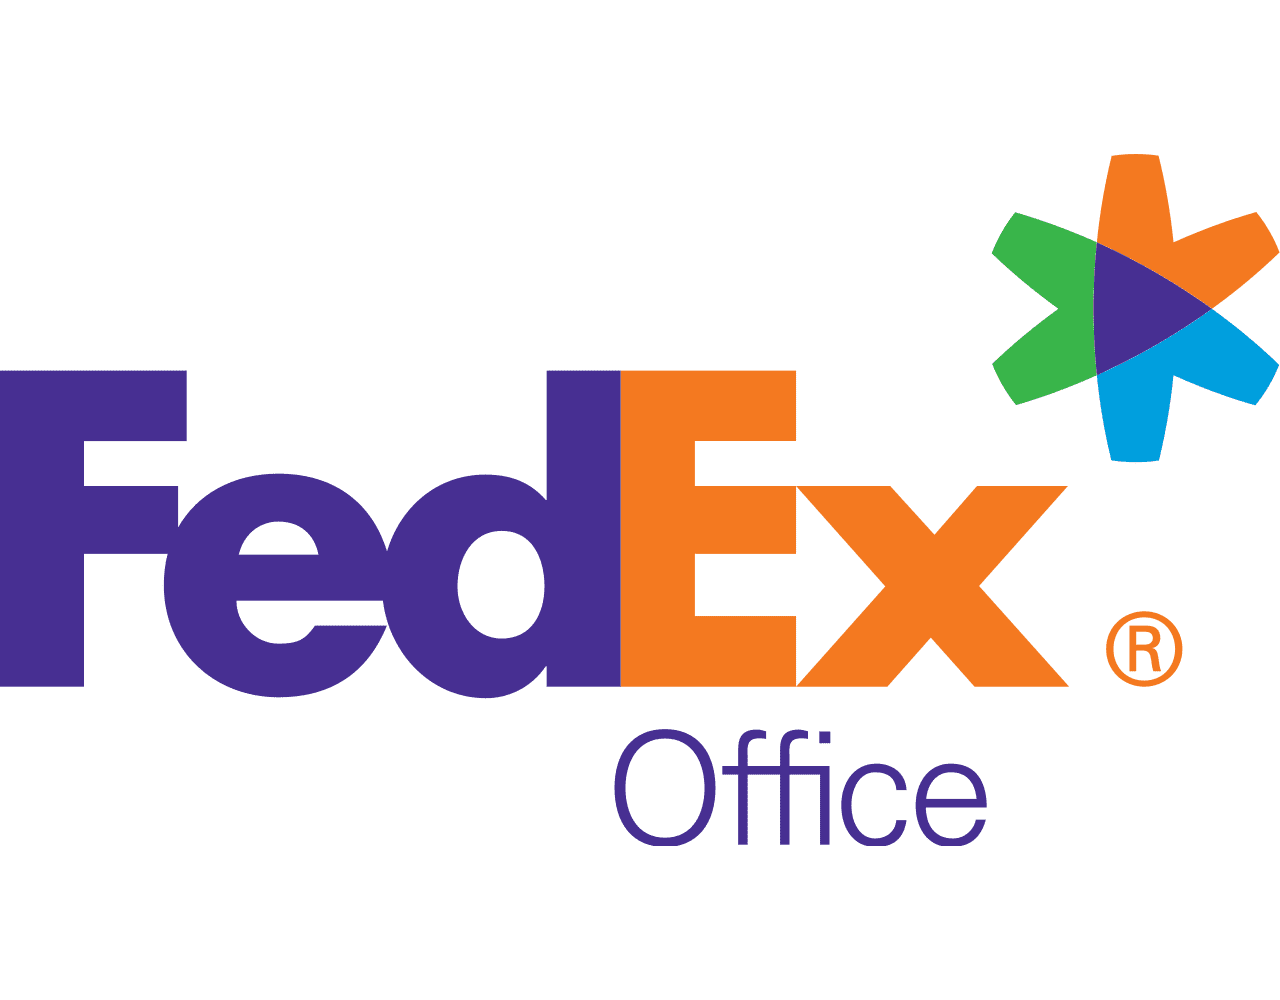 Fedex Office Logo